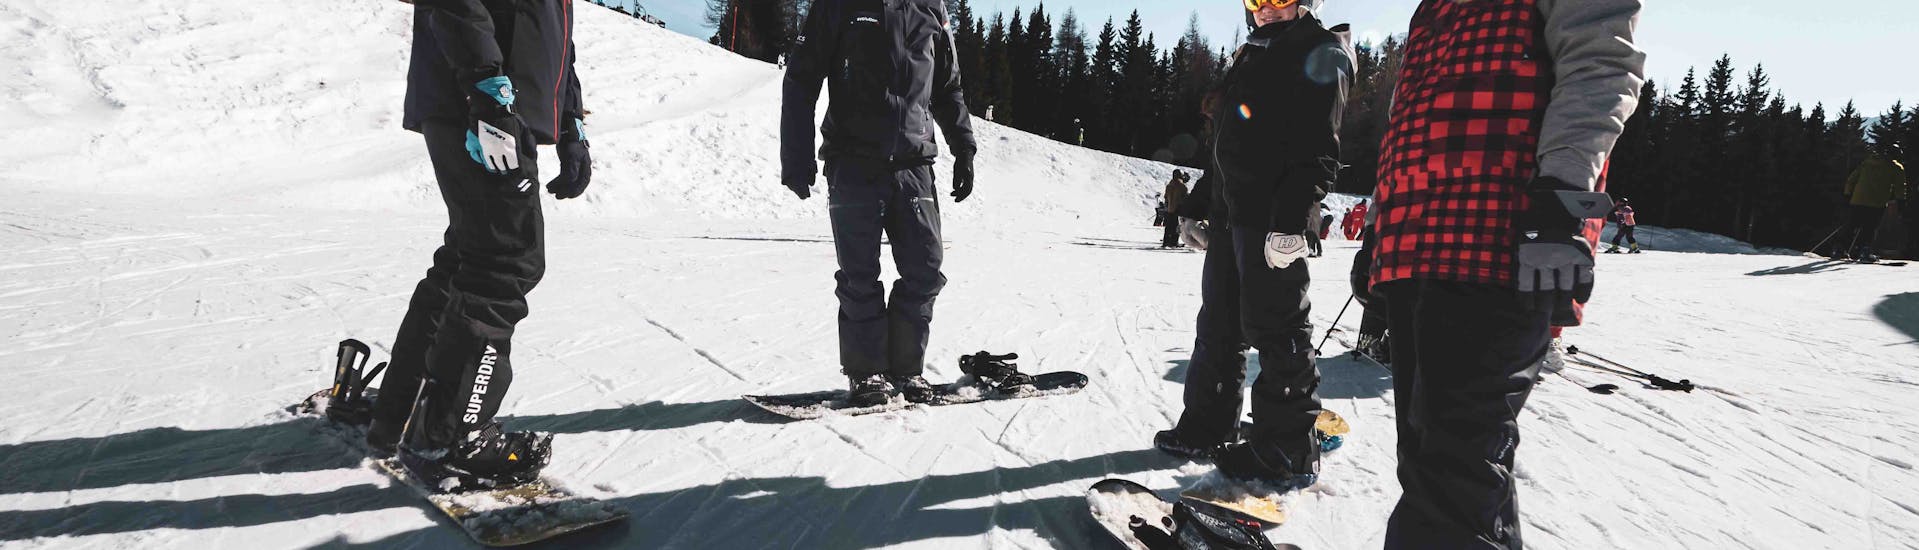 Cours de snowboard (dès 10 ans) - Arc 1800 avec Arc Aventures by Evolution 2 1800 .